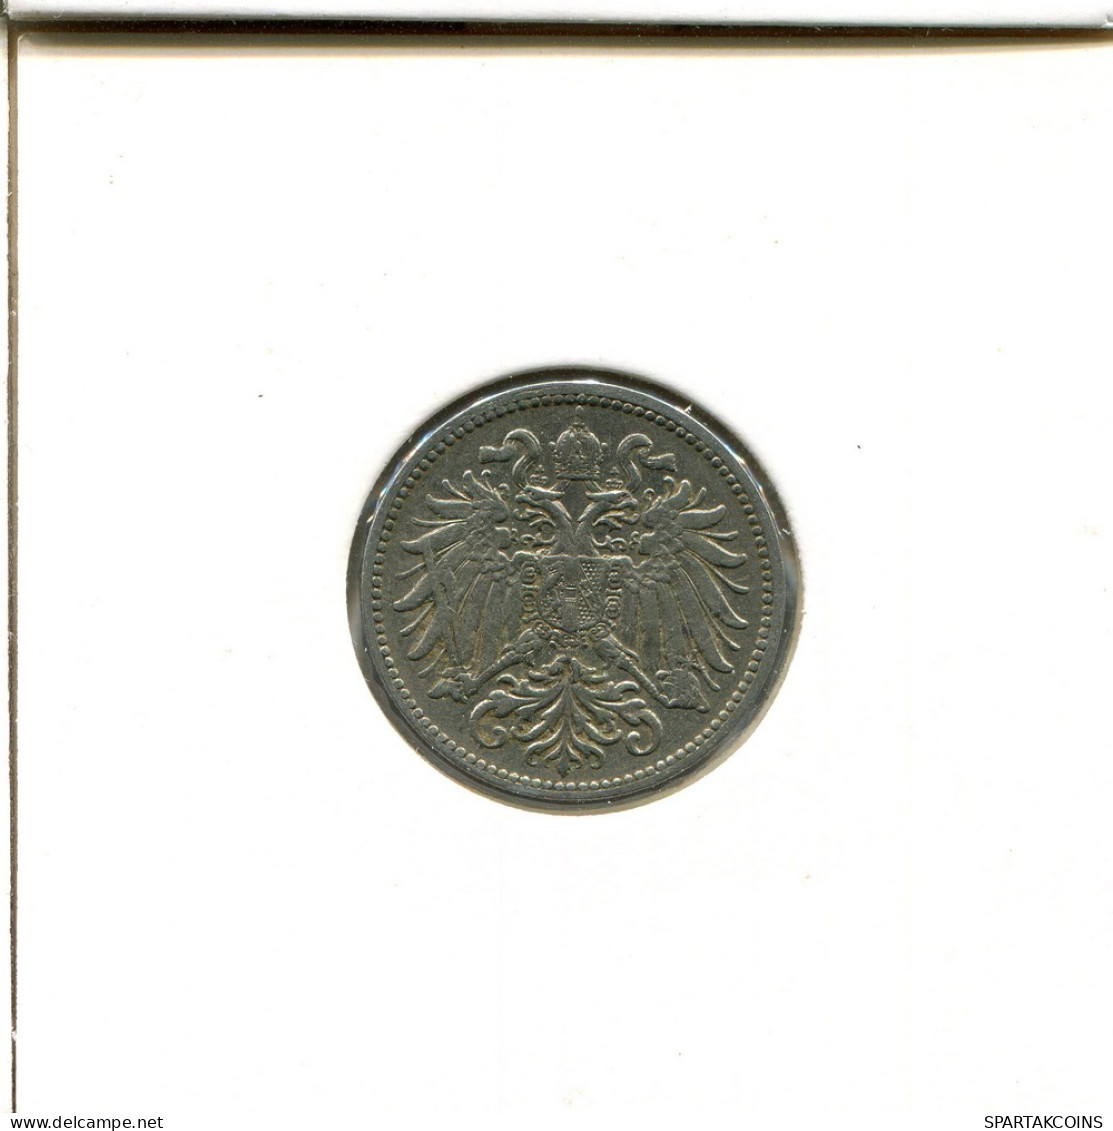 10 HELLER 1910 AUSTRIA Coin #AT523.U.A - Oostenrijk